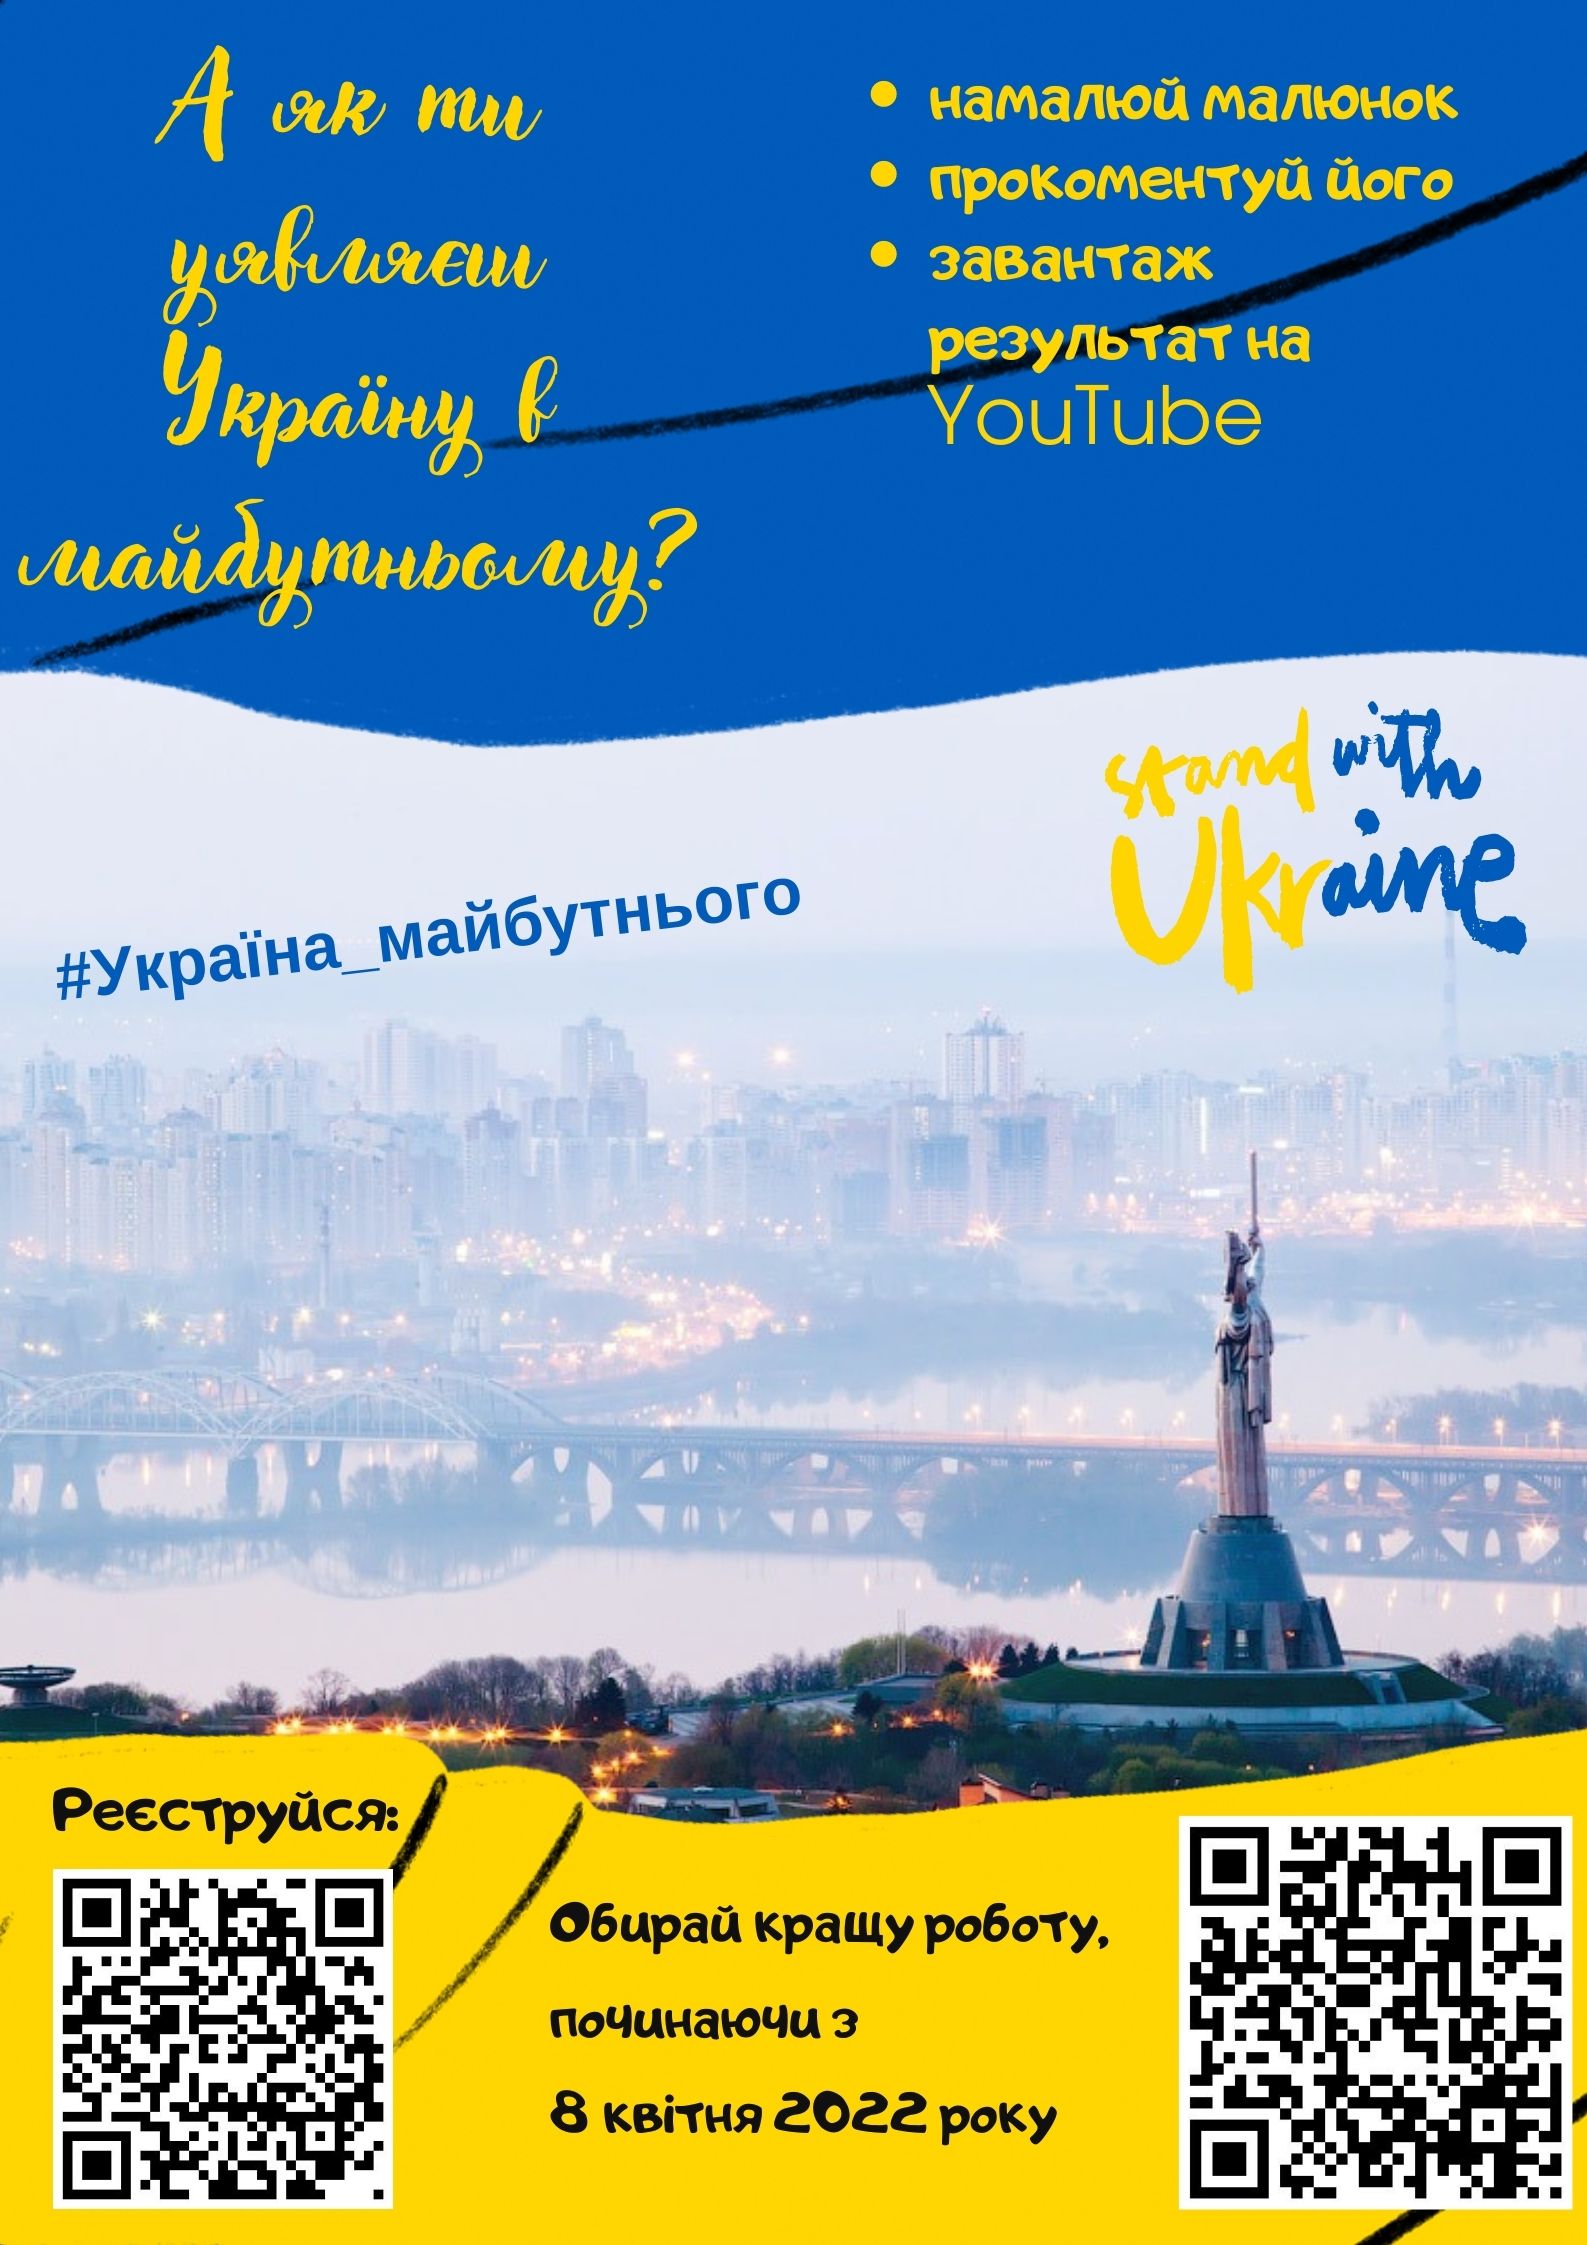 Хмельницький обласний центр туризму і краєзнавства учнівської молоді запрошує учнівську молодь до участі у Інтернет-конкурсі «Україна майбутнього».